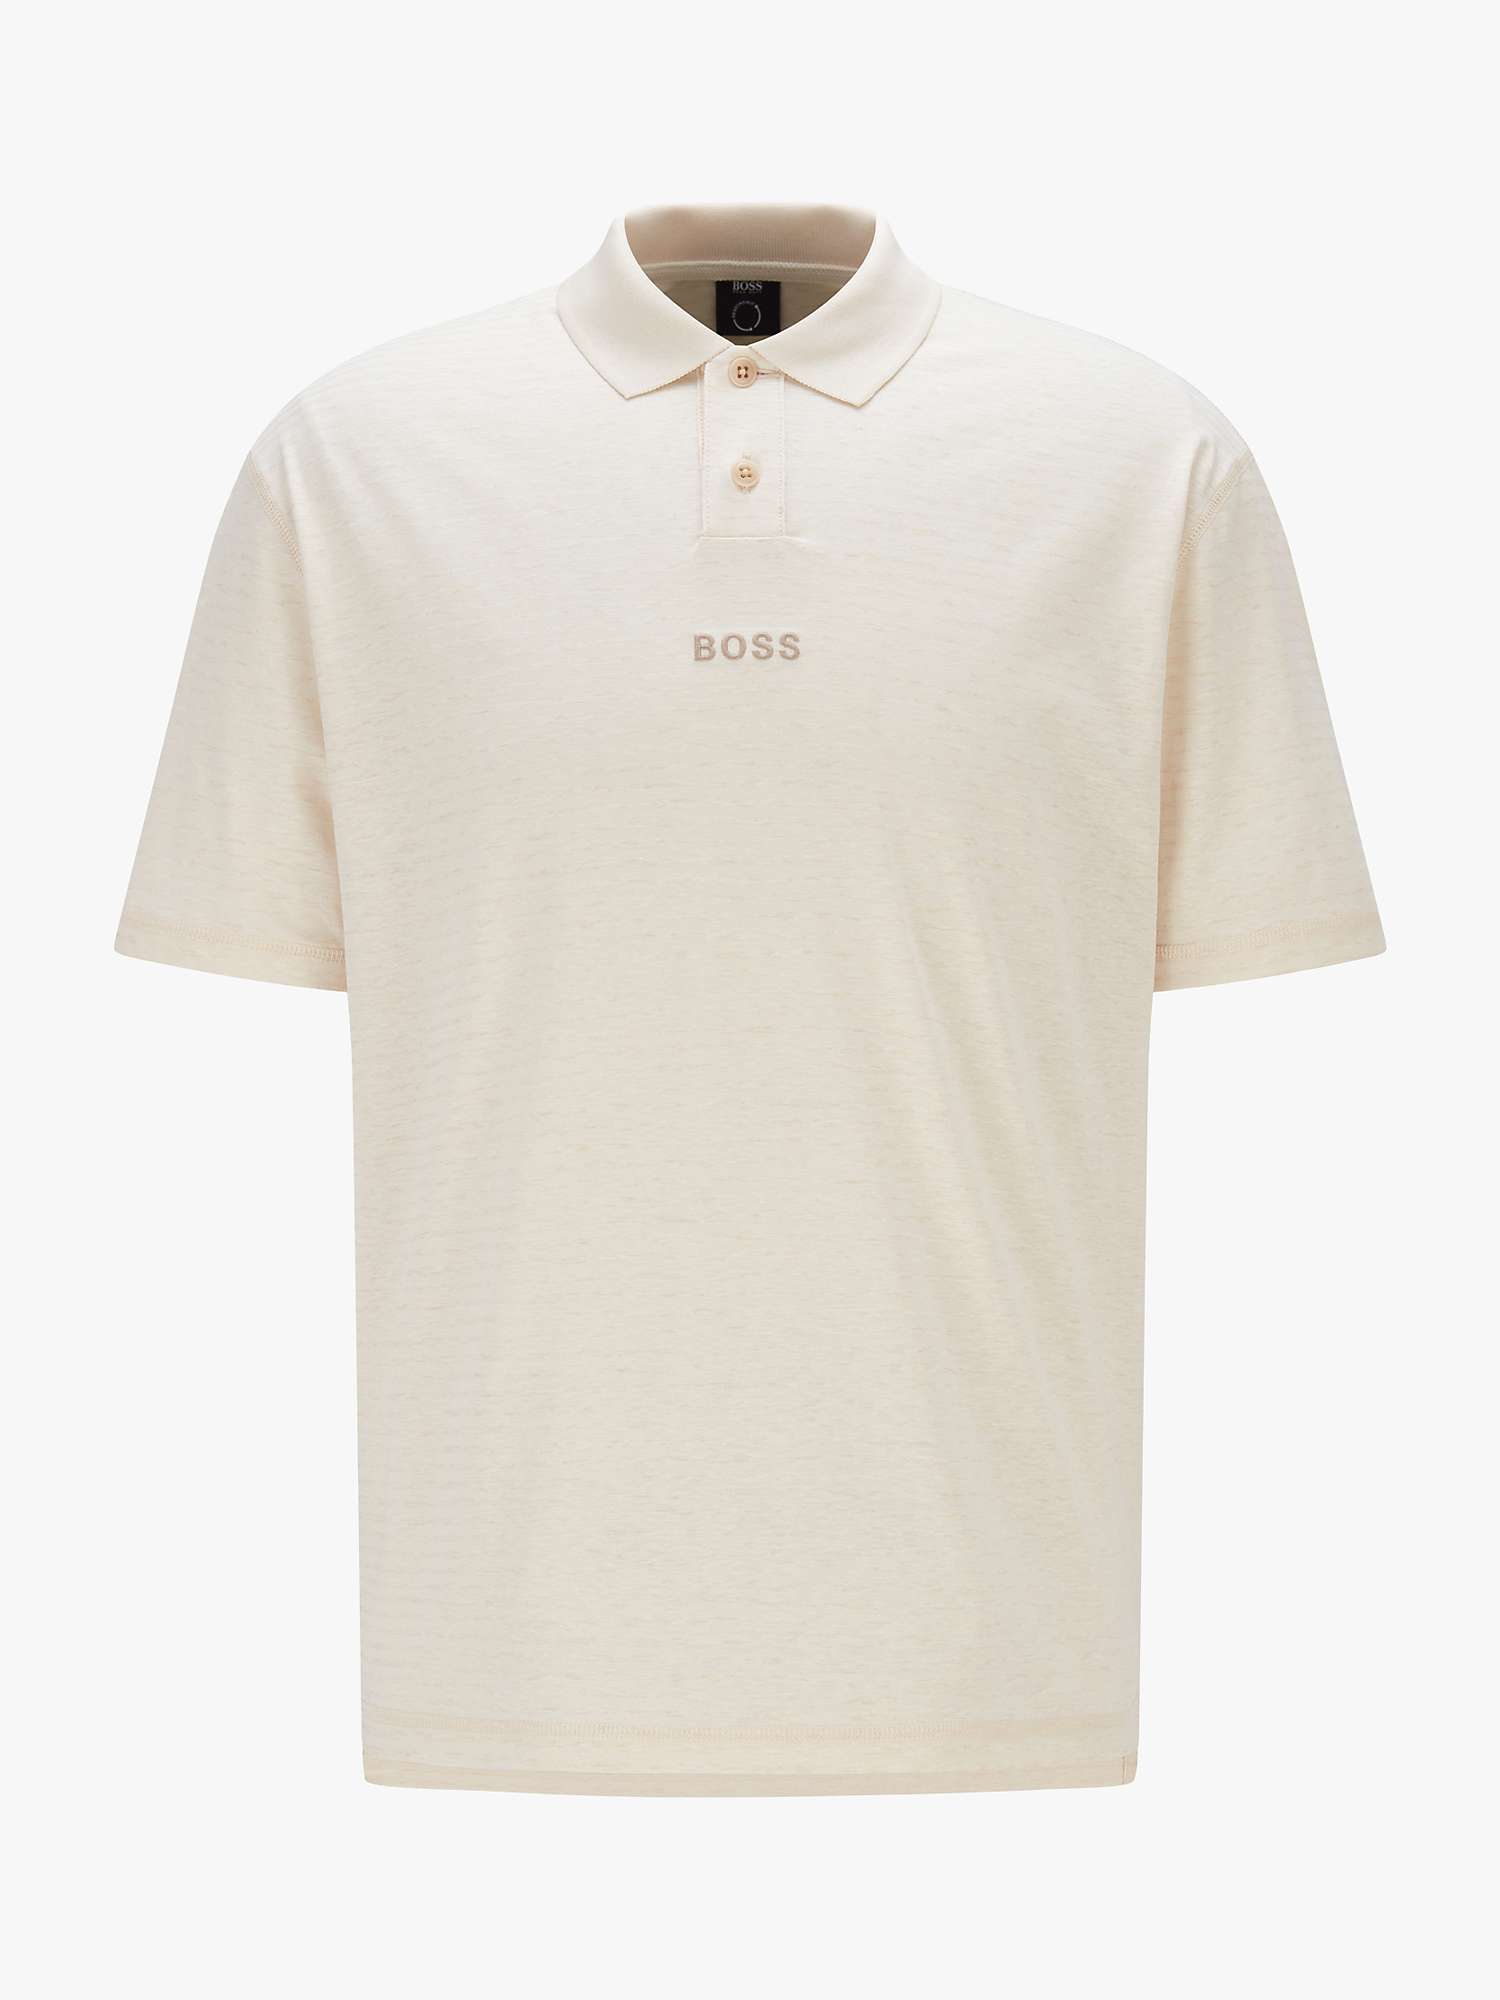 Buy BOSS Pseed Cotton Hemp Short Sleeve Polo Shirt, Light Beige Online at johnlewis.com